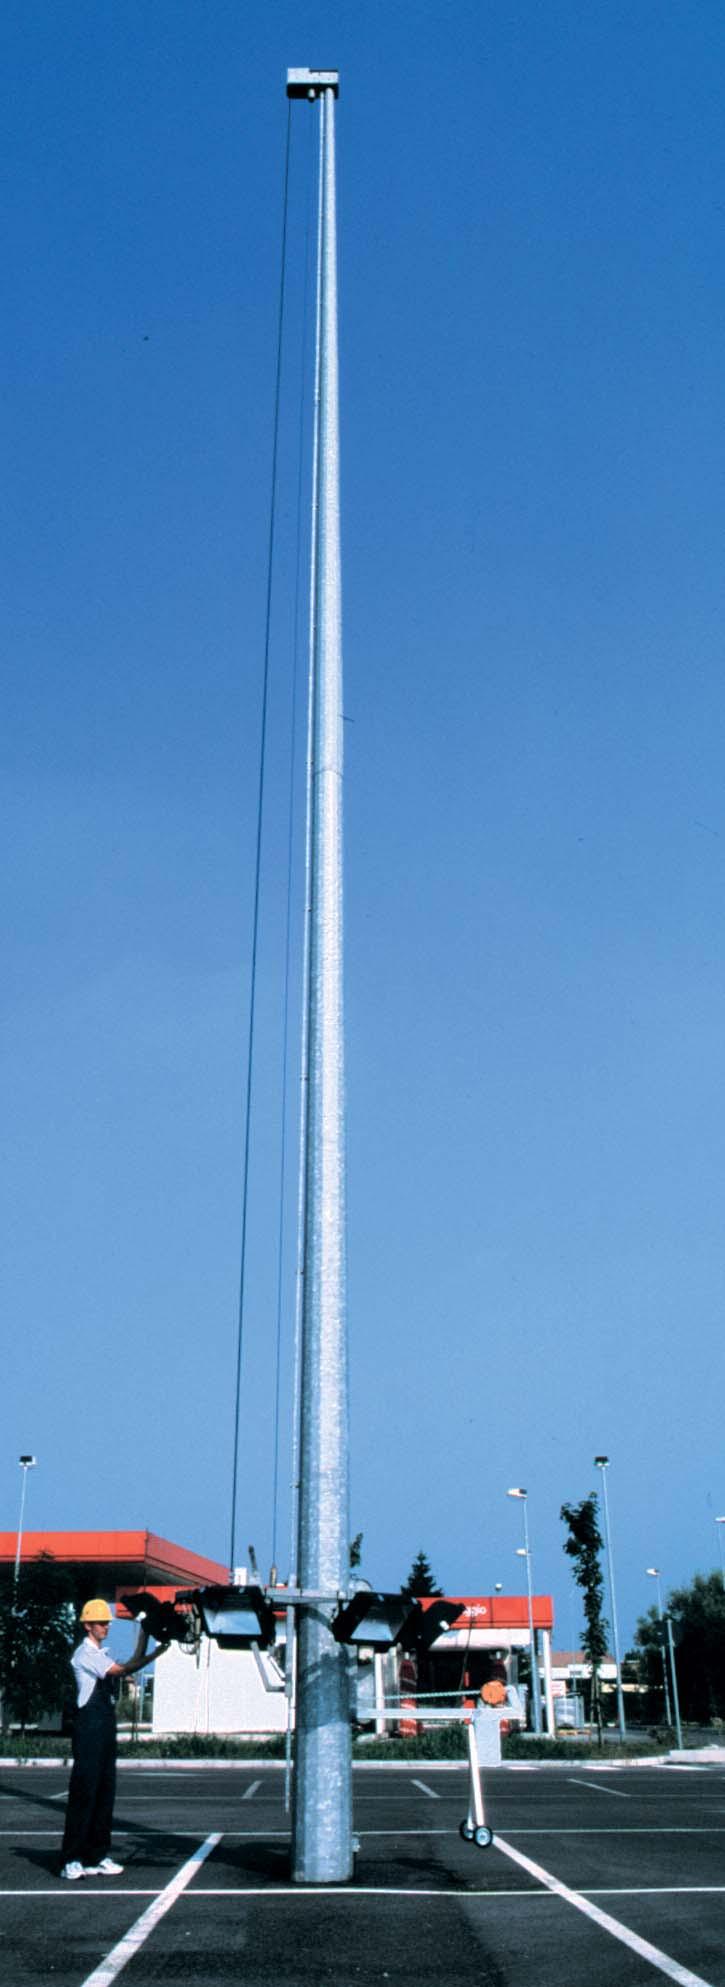 pag 26 Torri portafari Lighting masts costituite essenzialmente da: Stelo monotubolare di forma troncoconica a sezione poligonale, in acciaio zincato a caldo, composto da 2 o più tronchi innestabili